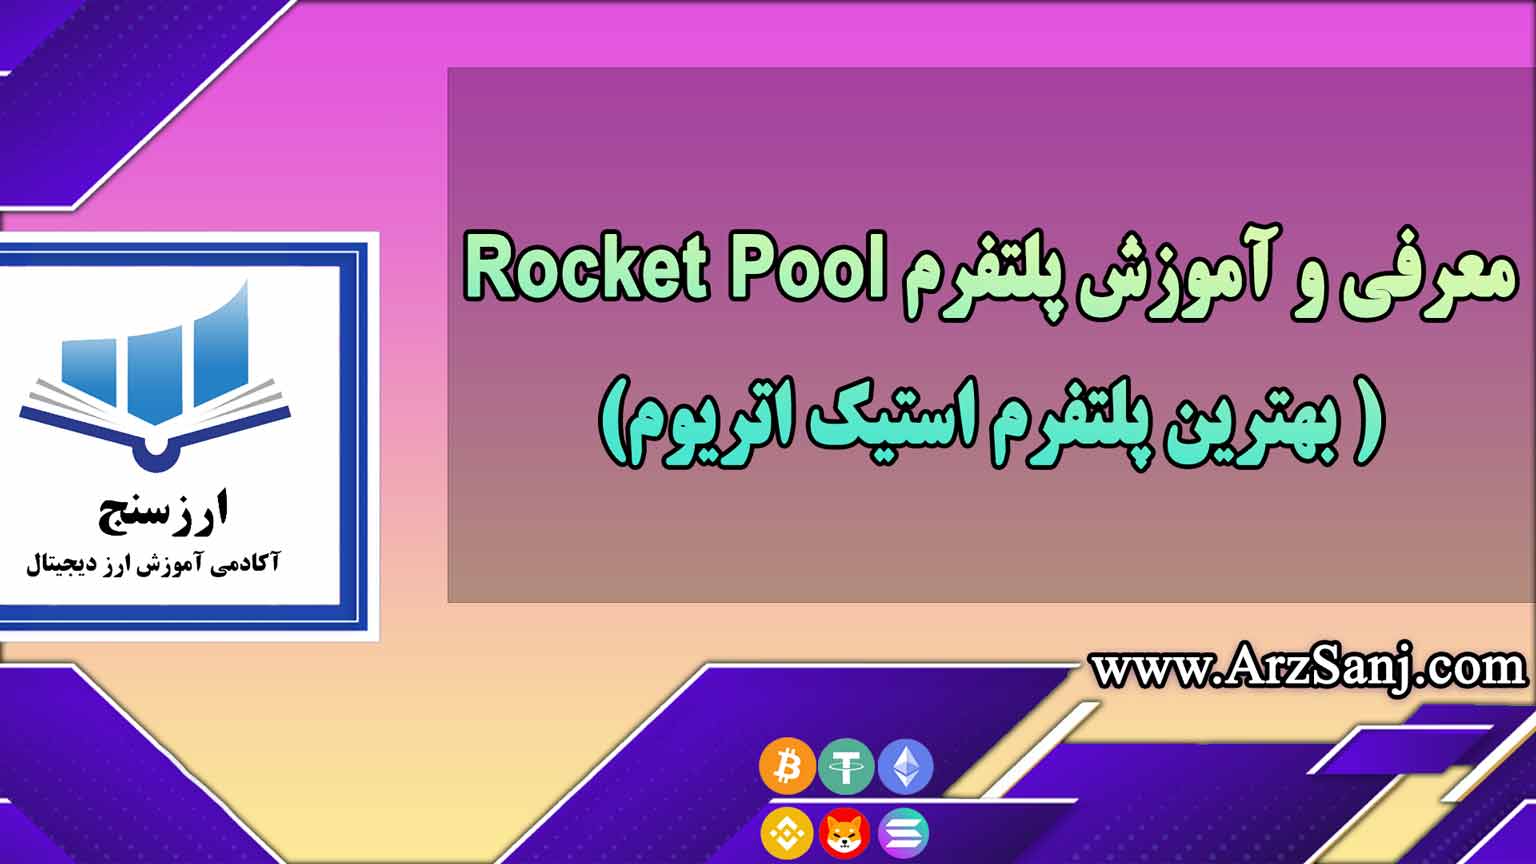 معرفی و آموزش پلتفرم Rocket Pool (بهترین پلتفرم استیک اتریوم)